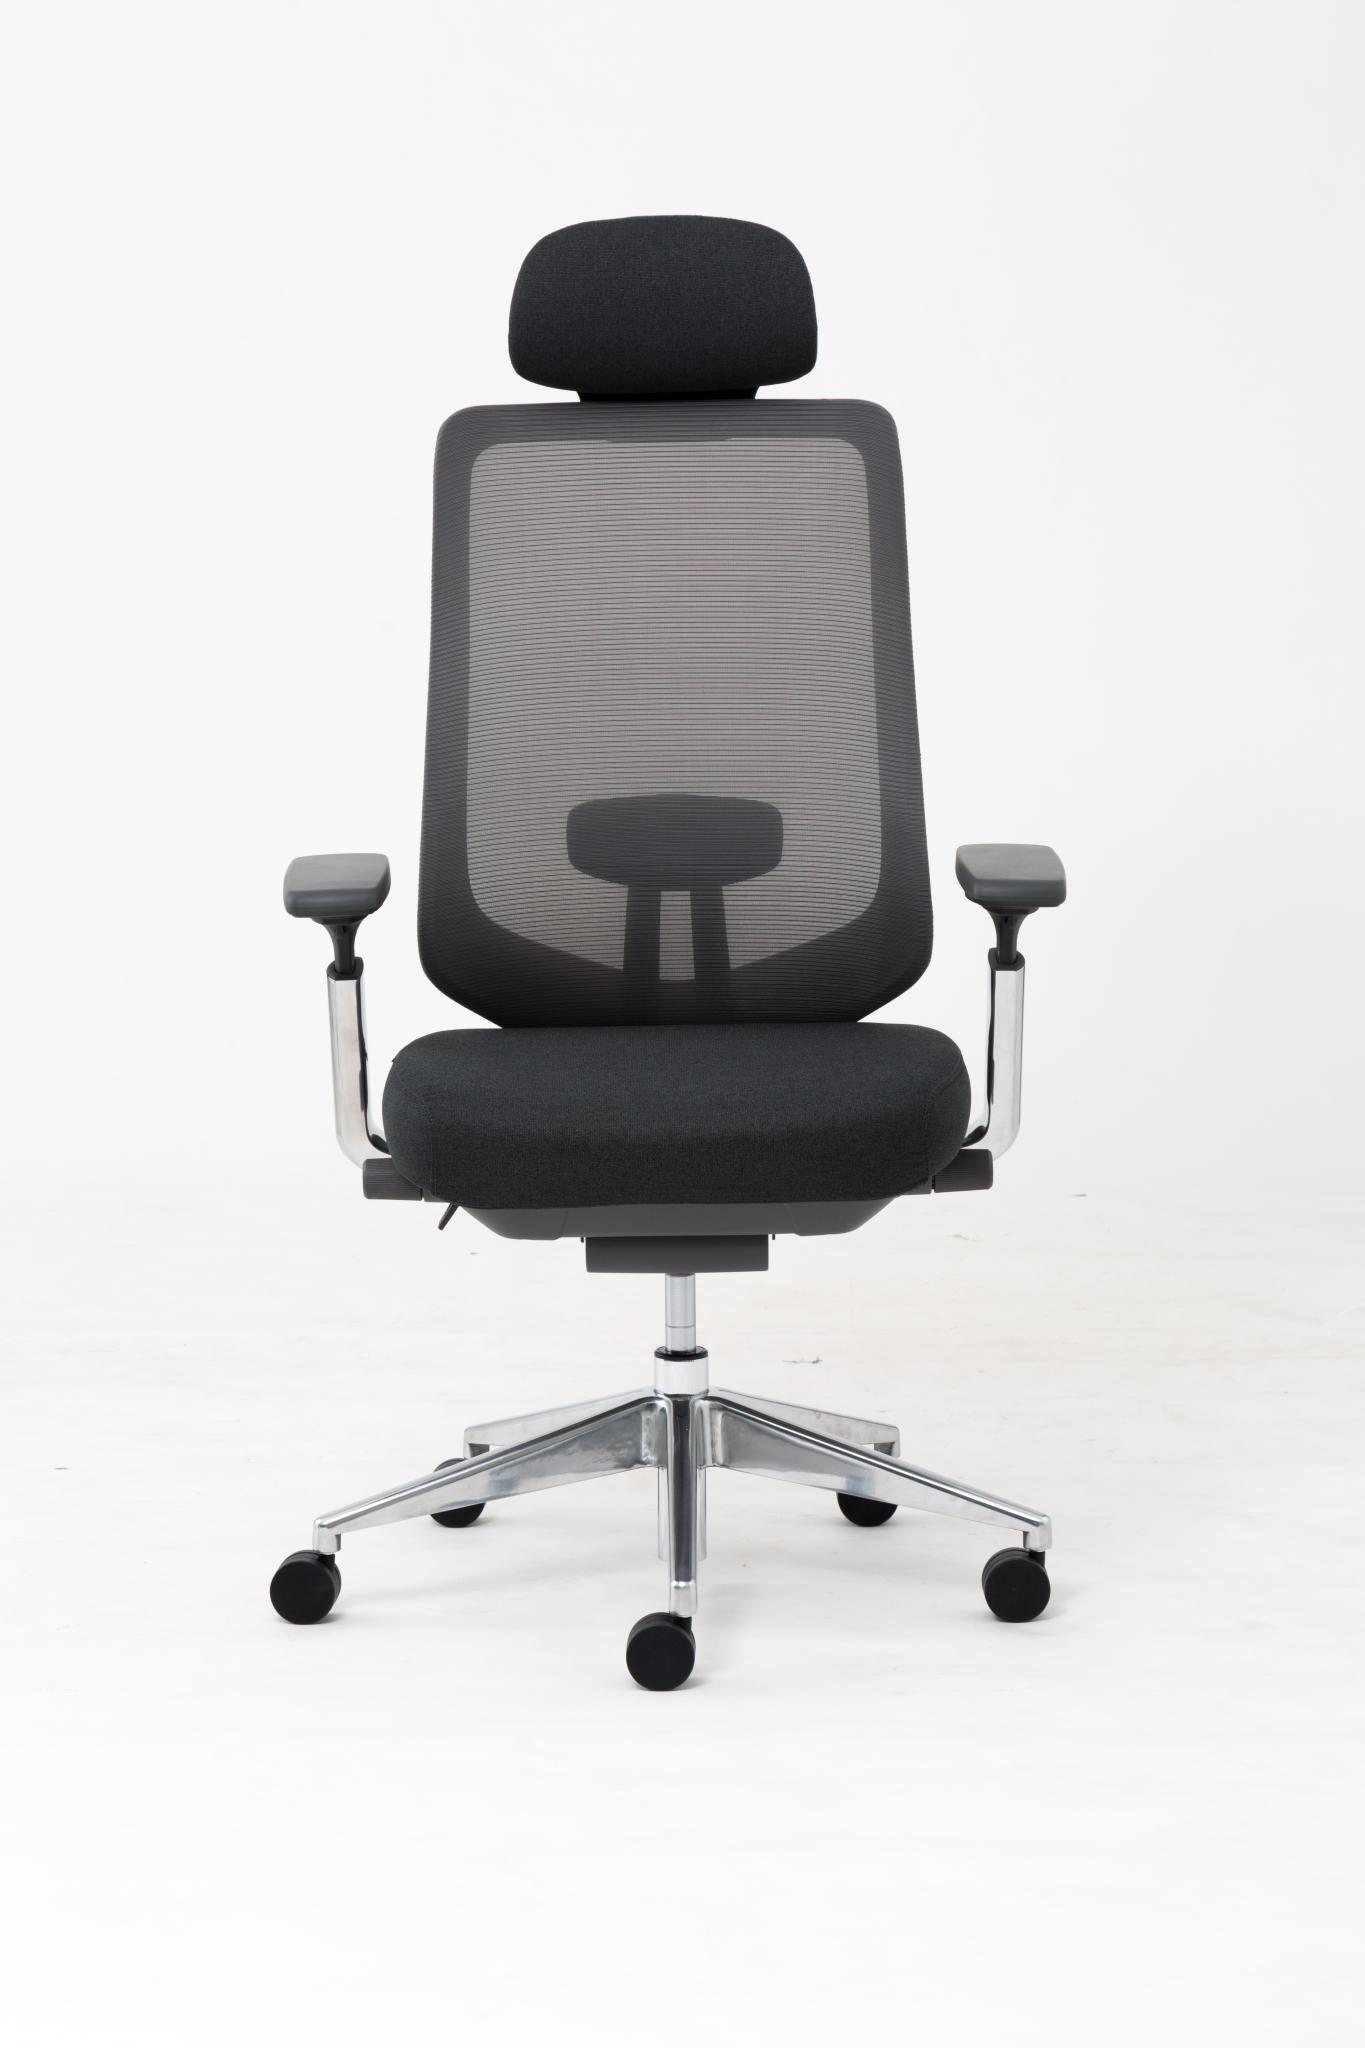 Modernform เก้าอี้สำนักงาน รุ่น Series16 Premium พนักพิงสูง เท้าแขนปรับ 4D เบาะหุ้มผ้าสีดำ พนักพิงตาข่ายเทา ขาอลูมิเนียม